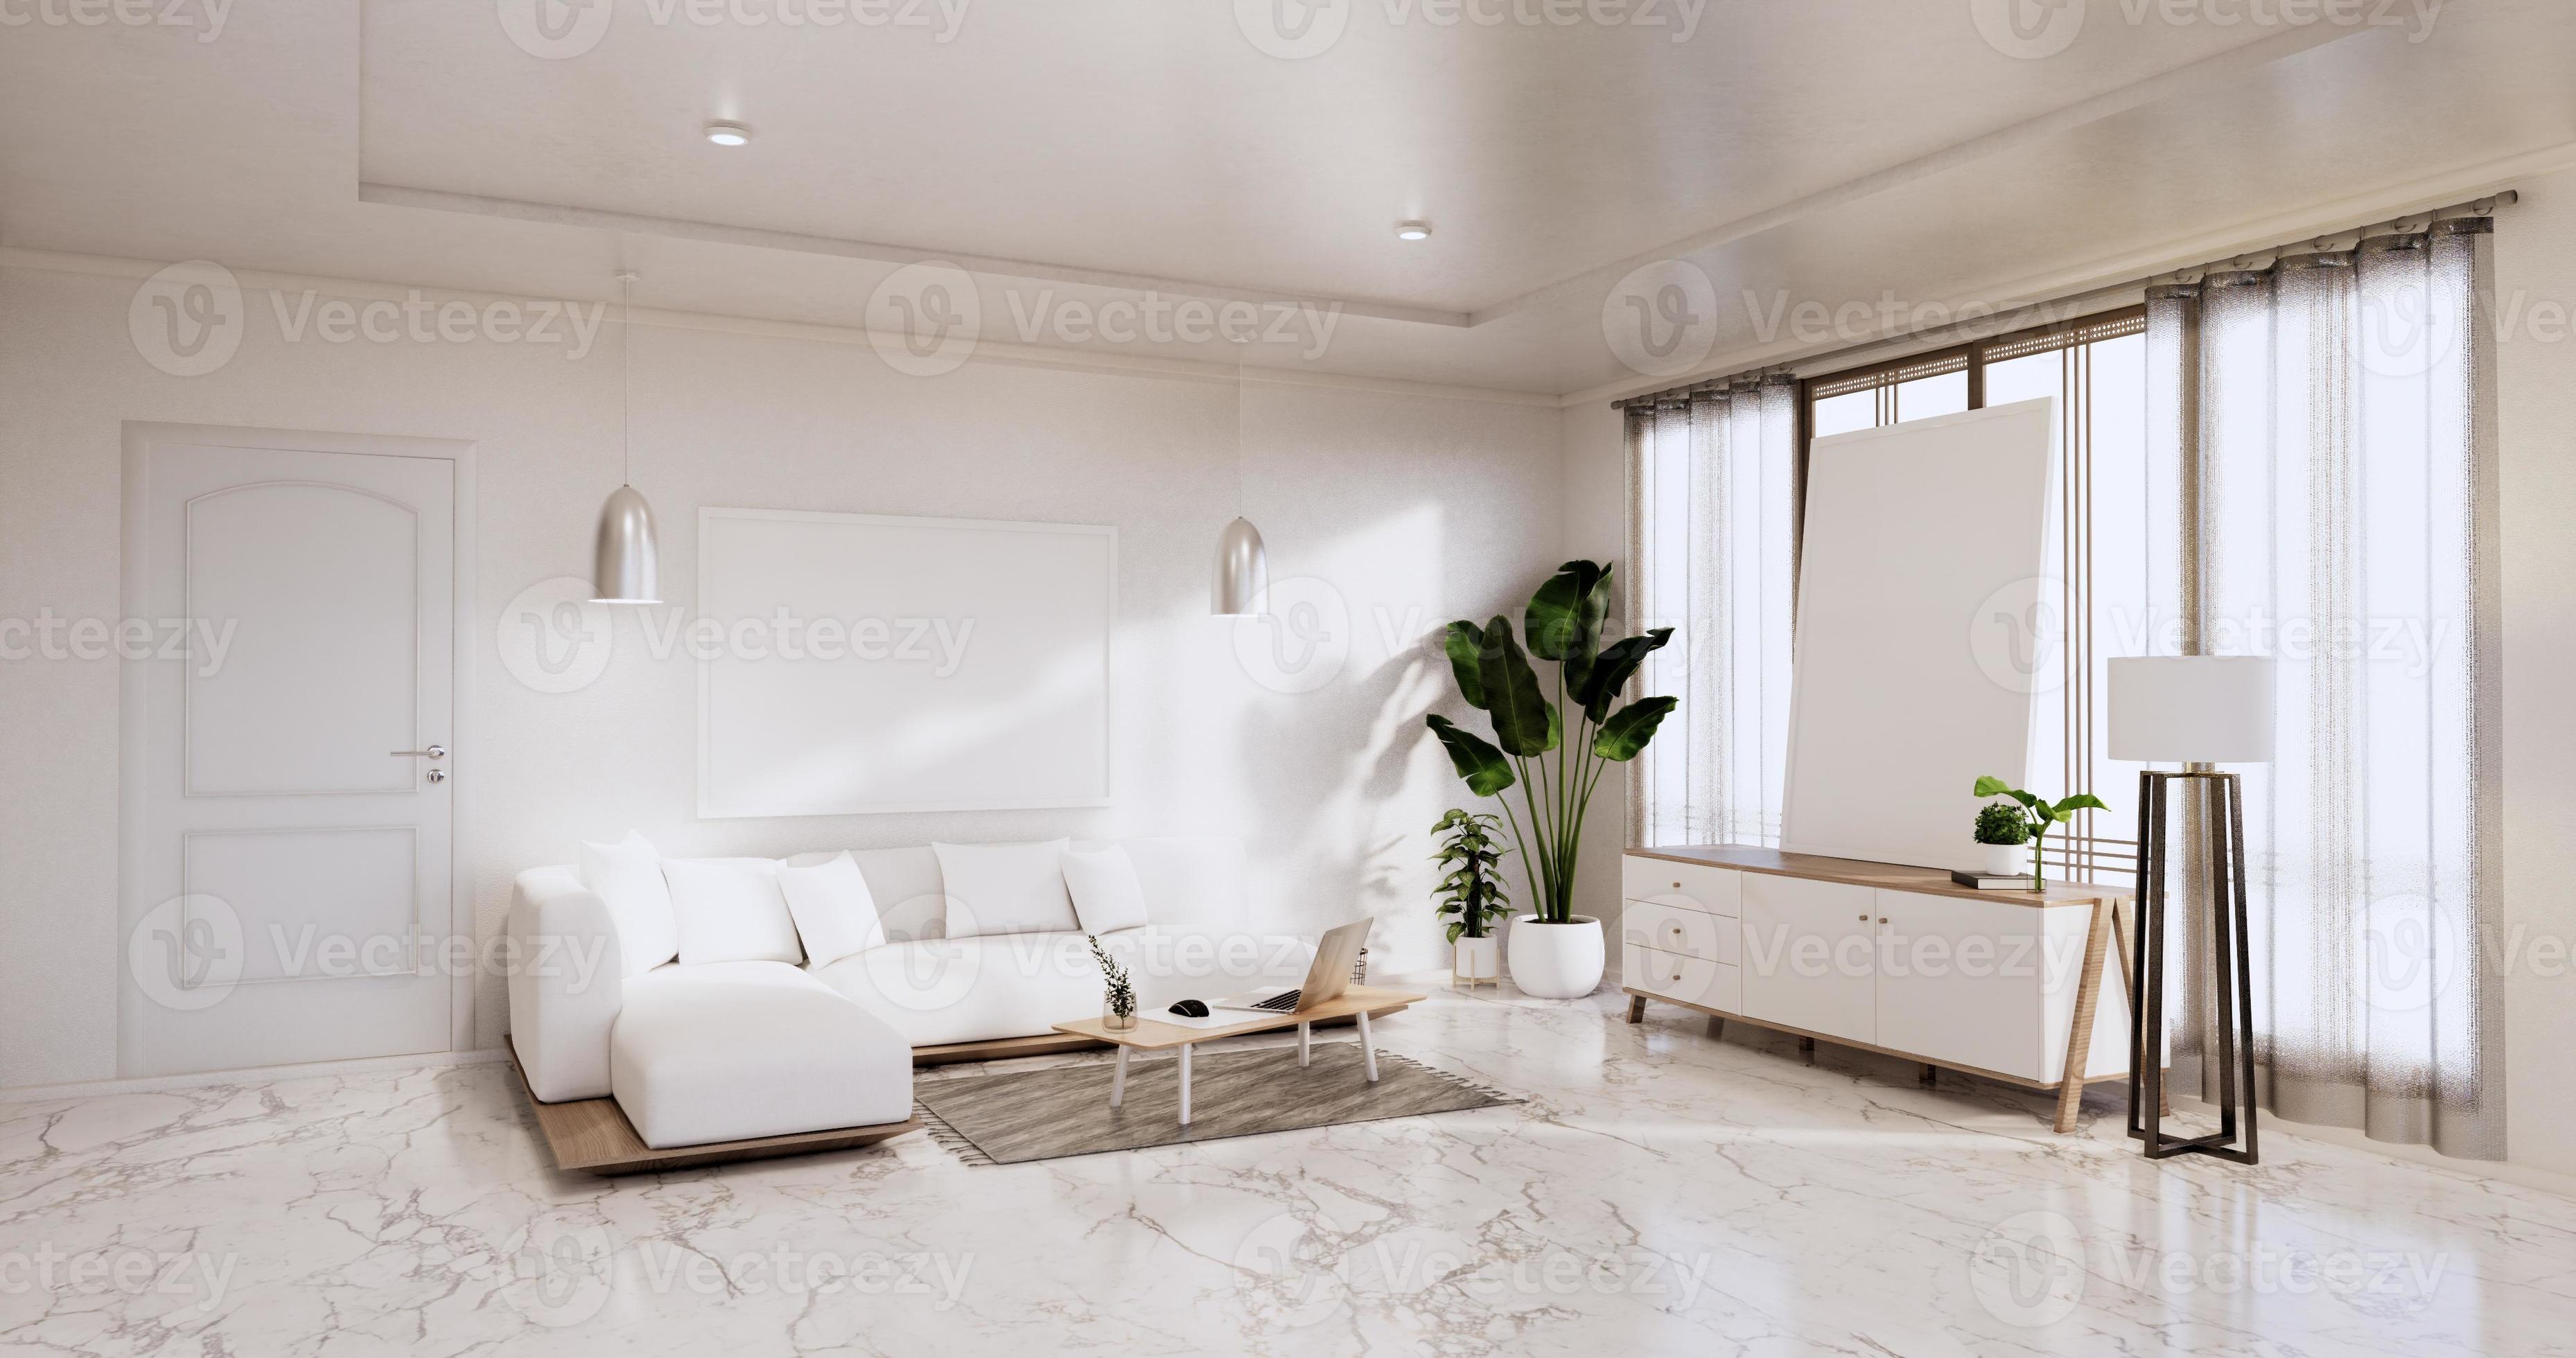 liberaal impliceren zijn interieur, woonkamer modern minimalistisch heeft bank en kast, planten,  lamp op witte muur en granieten tegels vloer.3D-rendering 4611033 Stockfoto